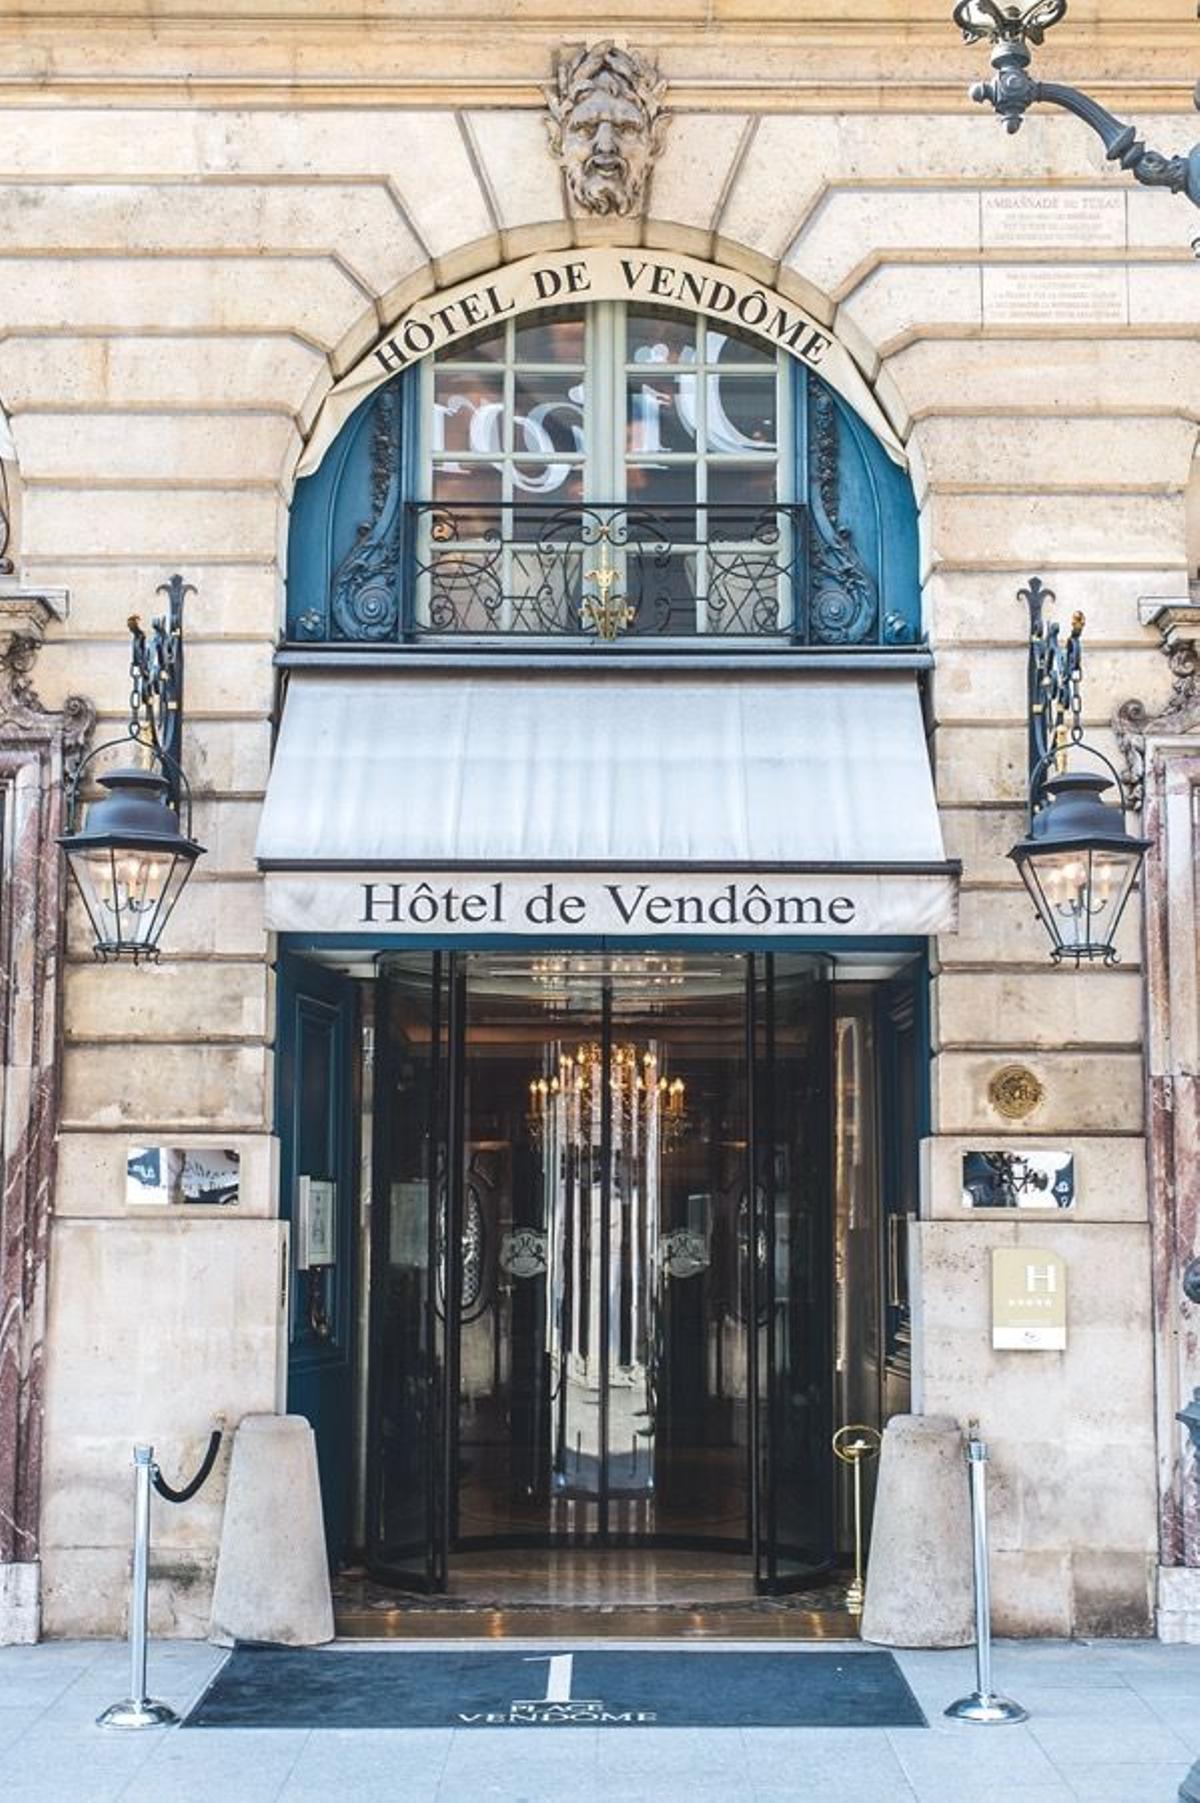 Hoteles de leyenda, Hotel de Vendôme